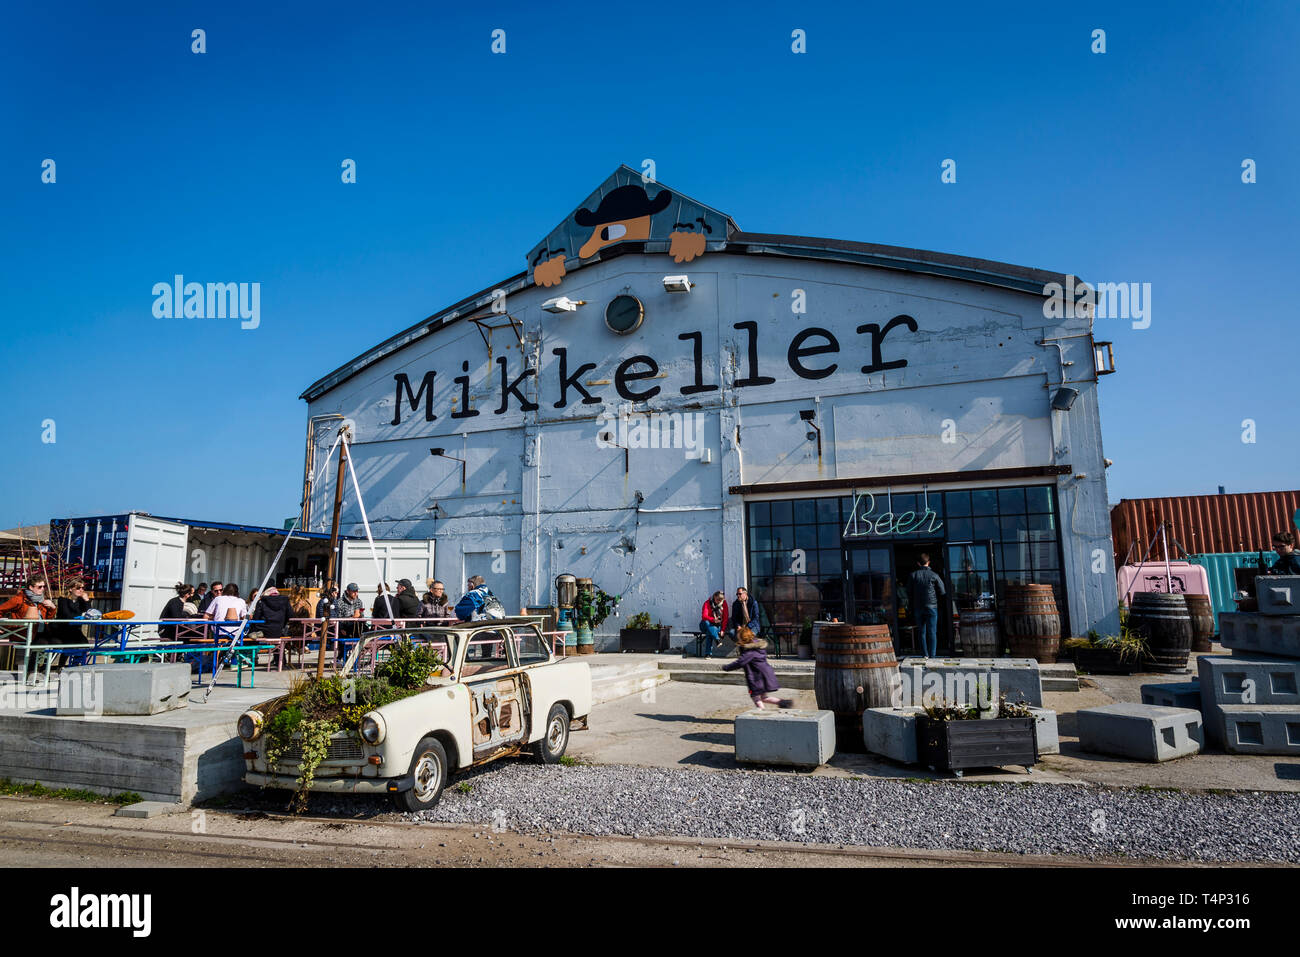 Mikkeller Baghaven, einem ikonischen Bier Bar in einem alten Industriegebäude auf Refshaleoen Insel, Kopenhagen, Dänemark Stockfoto